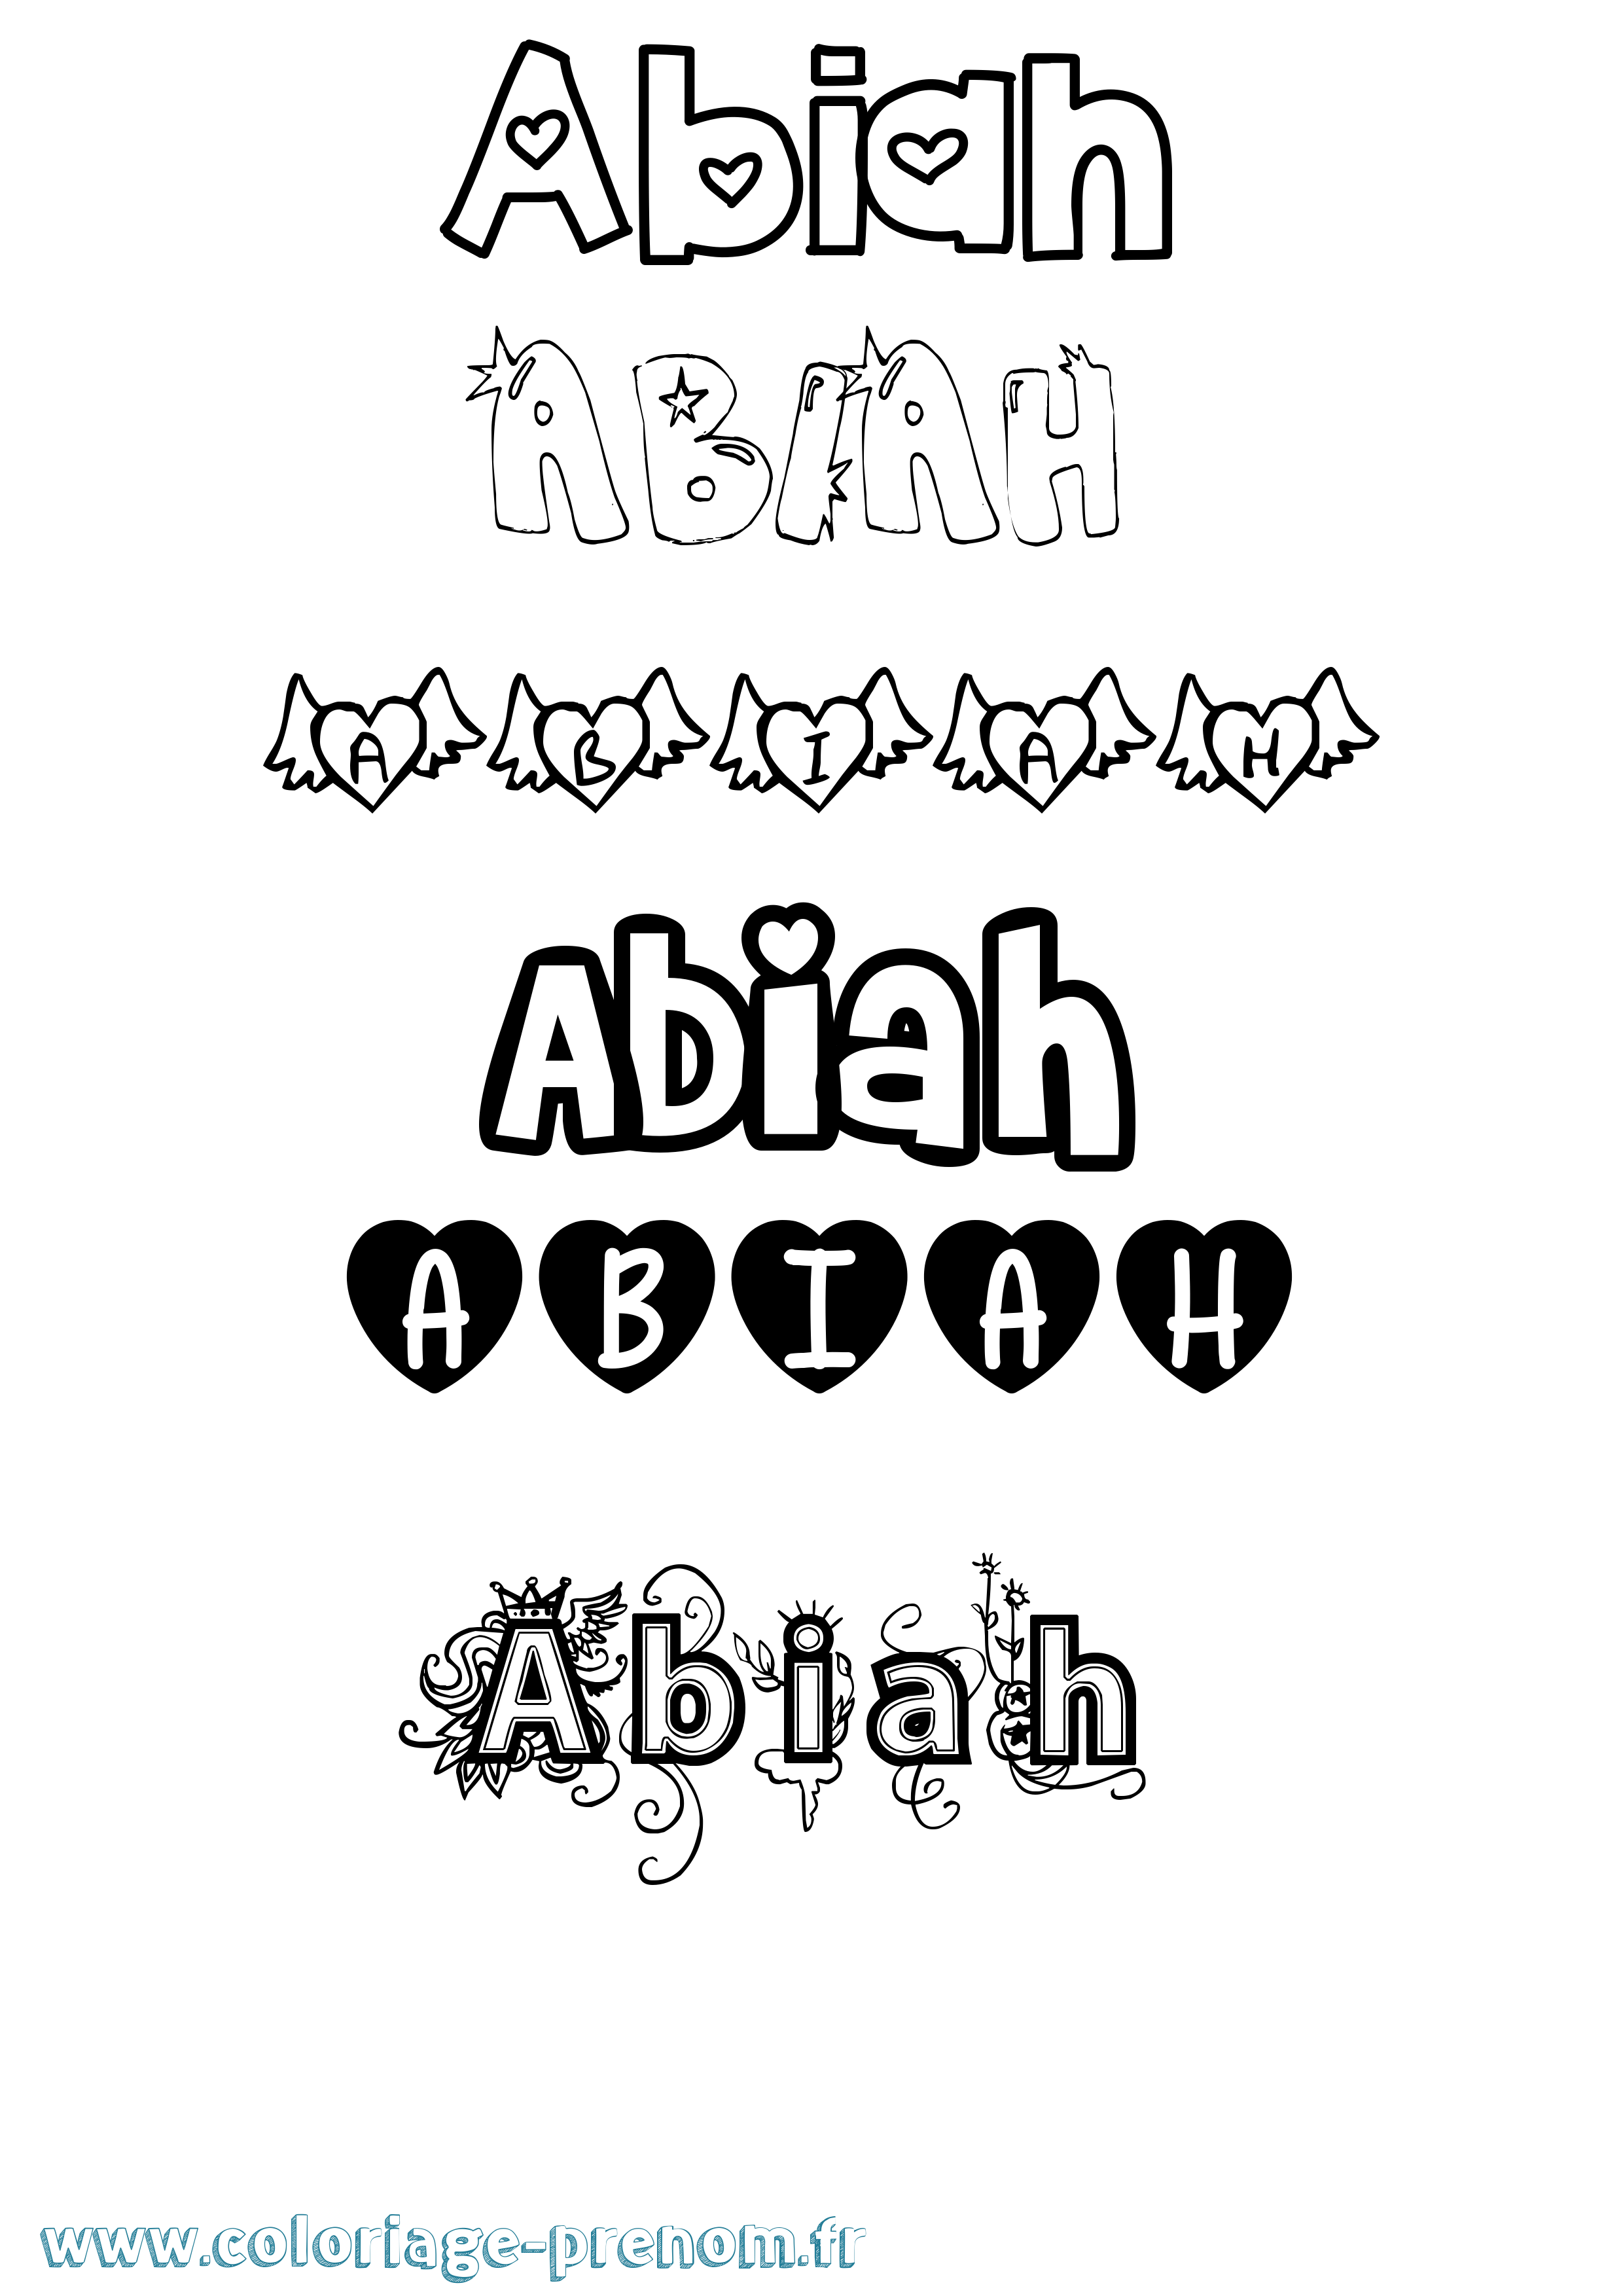 Coloriage prénom Abiah Girly